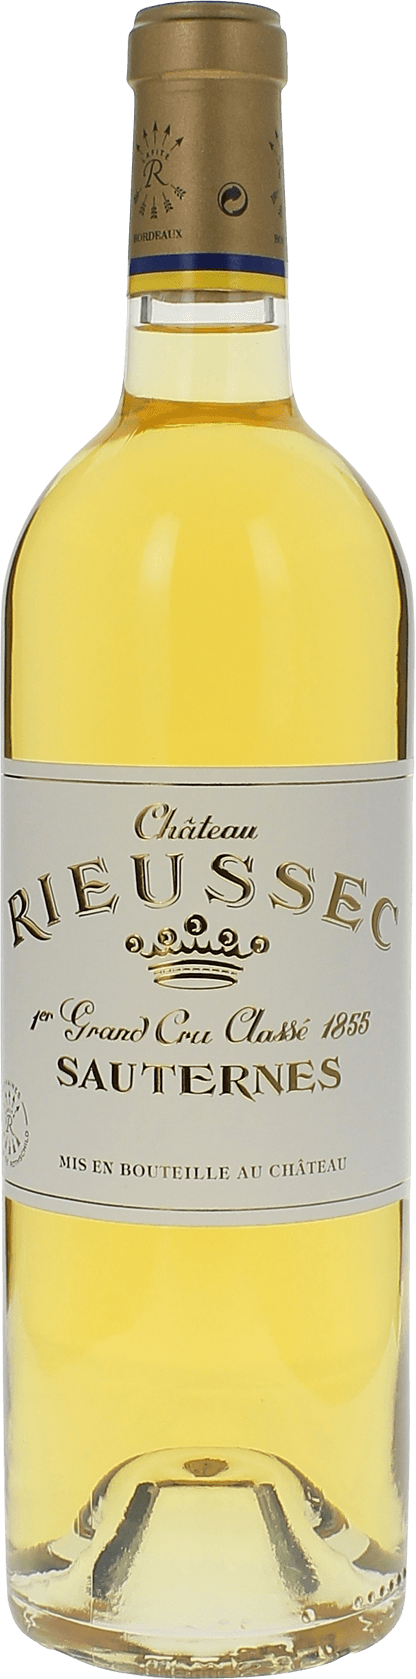 Rieussec 1999 1er cru Sauternes, Bordeaux blanc